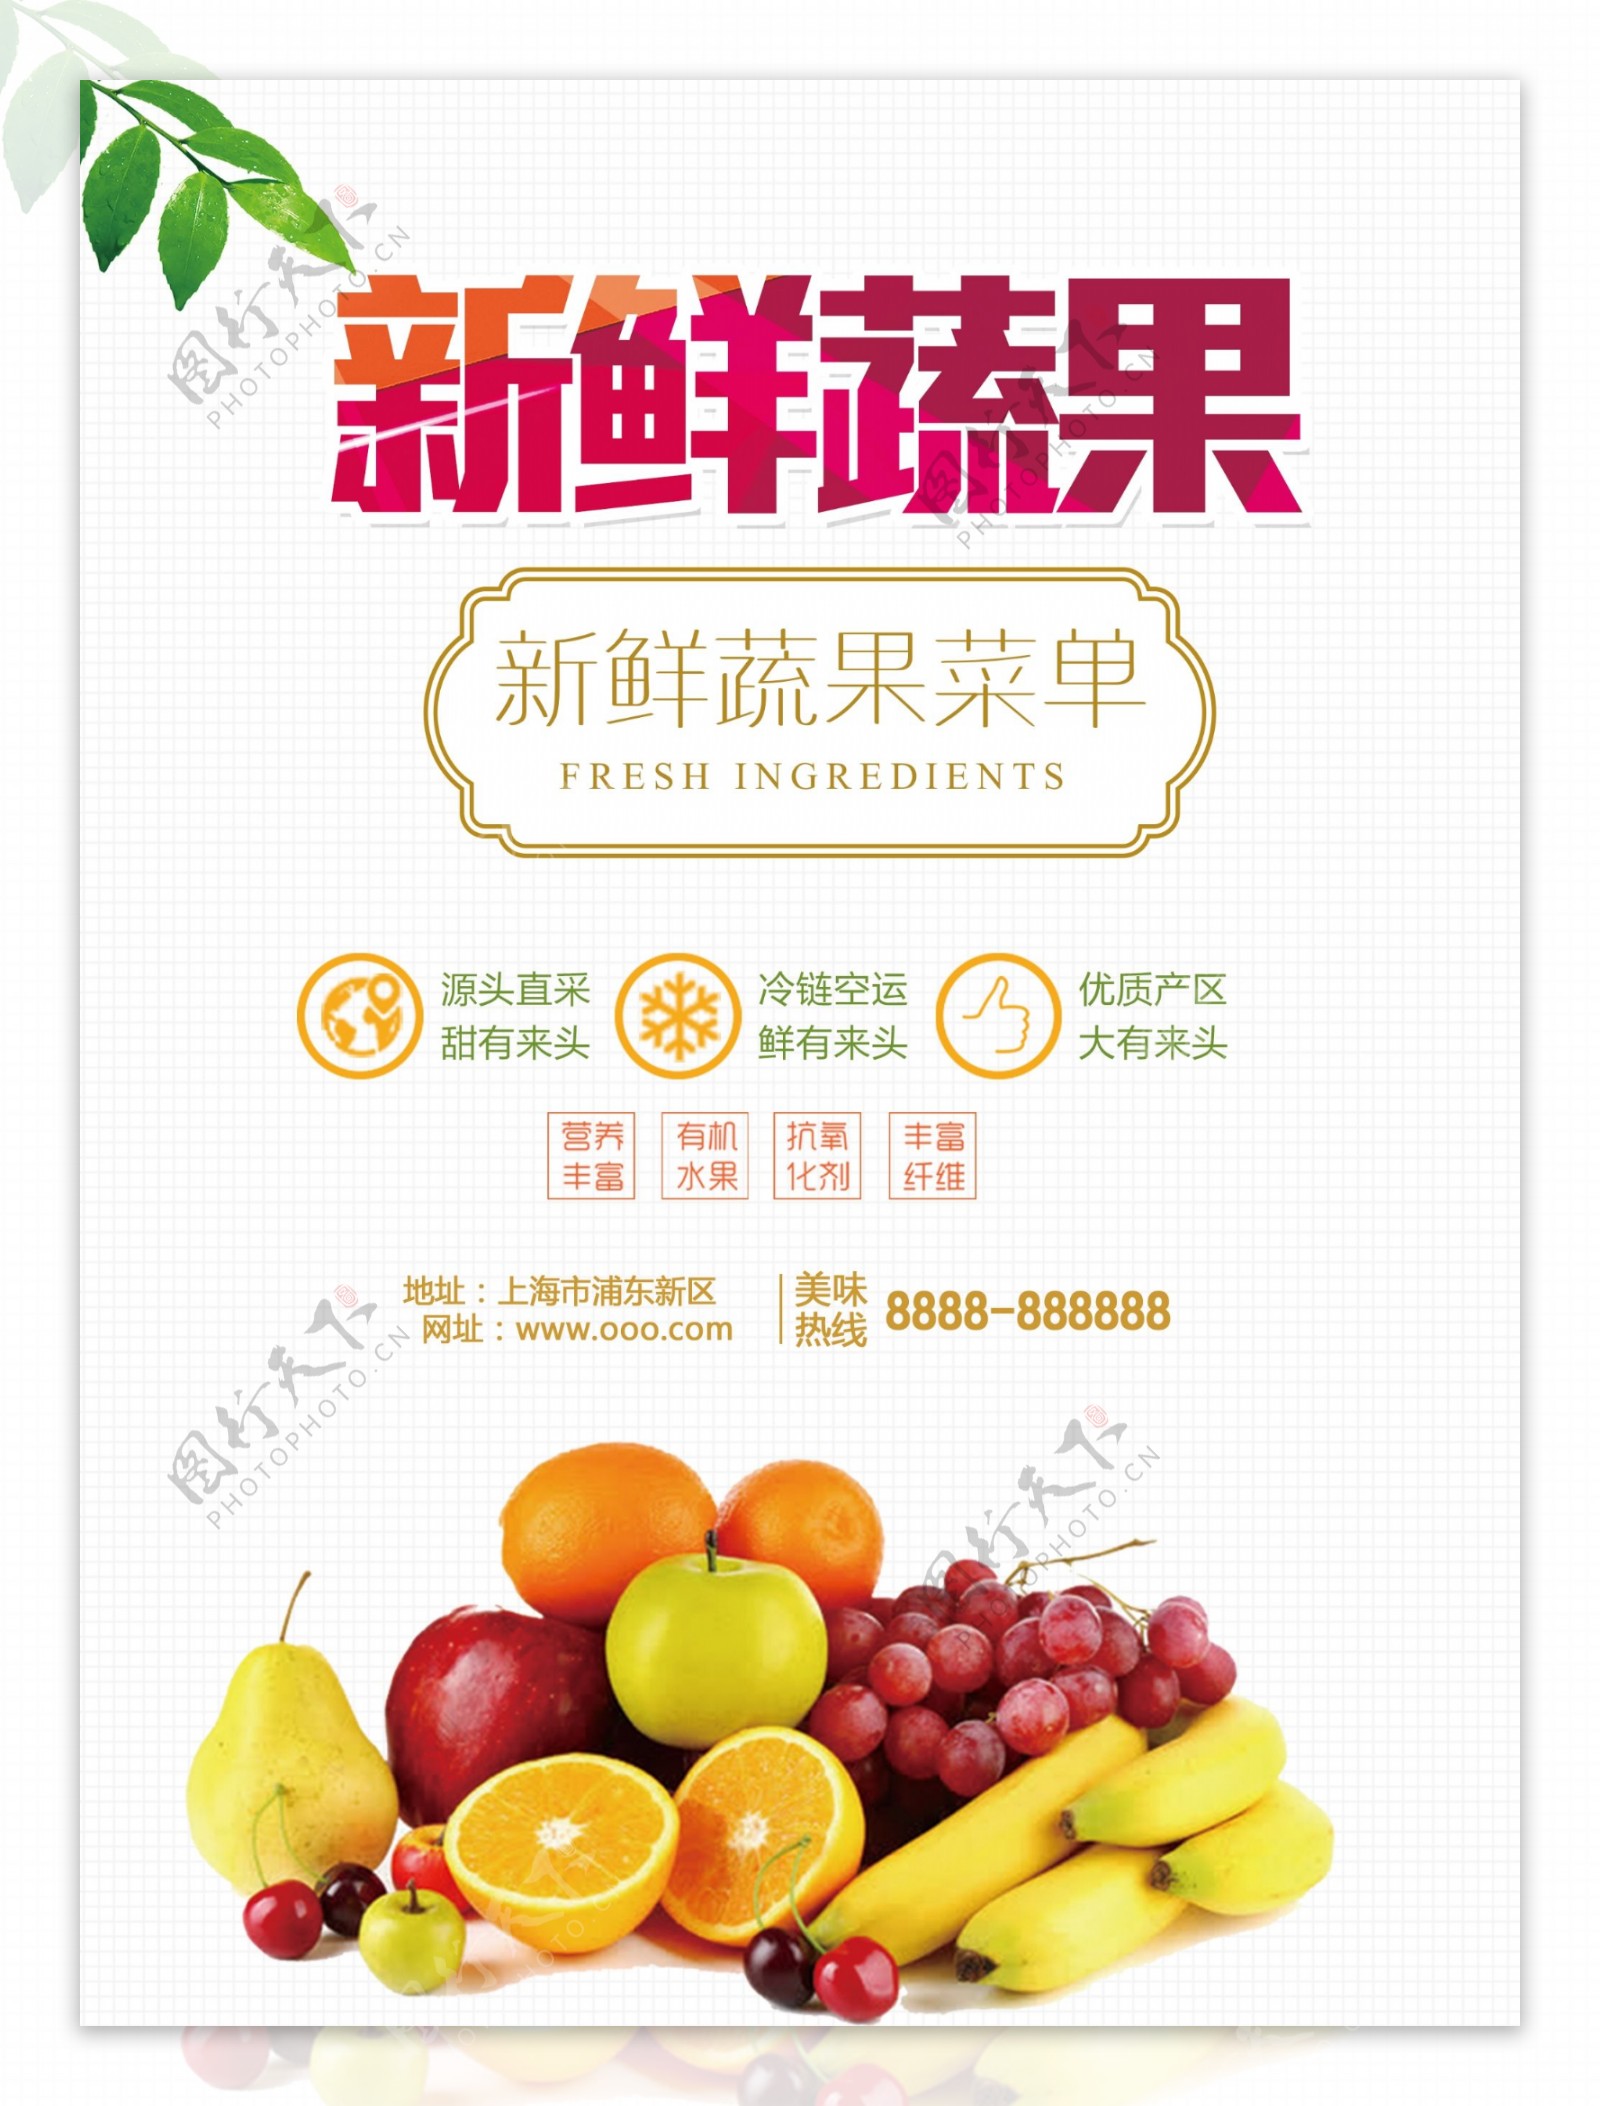 新鲜果蔬宣传菜单设计素材图